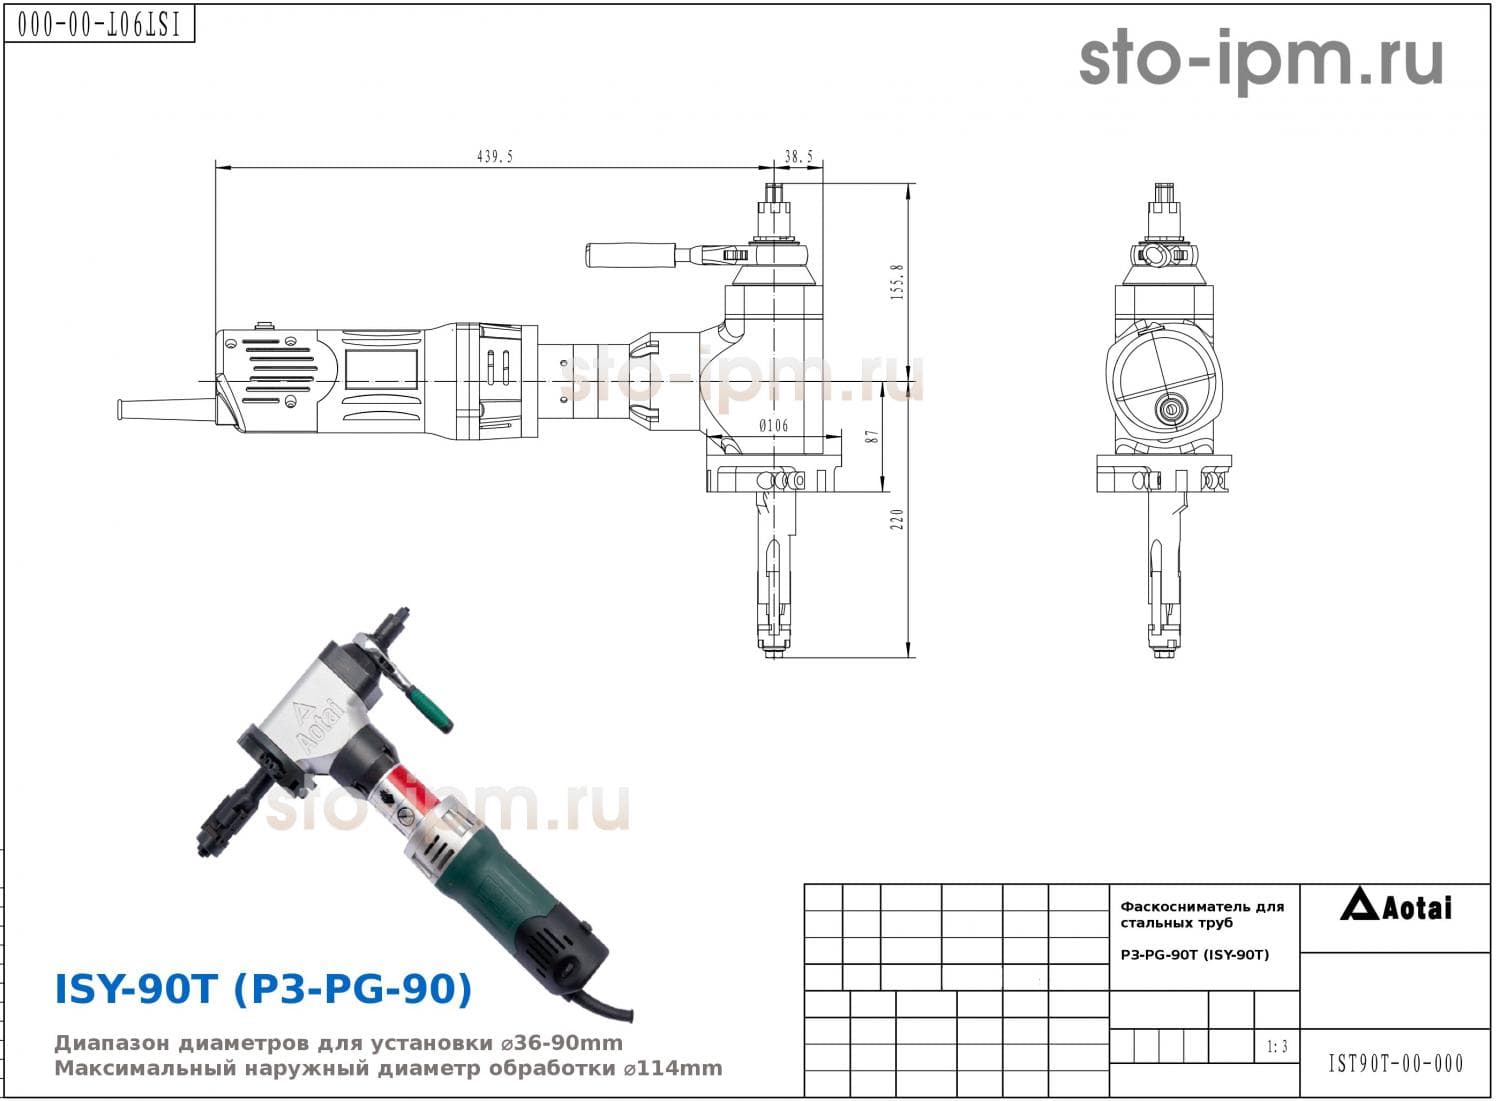 Фаскосниматель для стальных труб P3-PG-90T (ISY-90T) с габаритными размерами